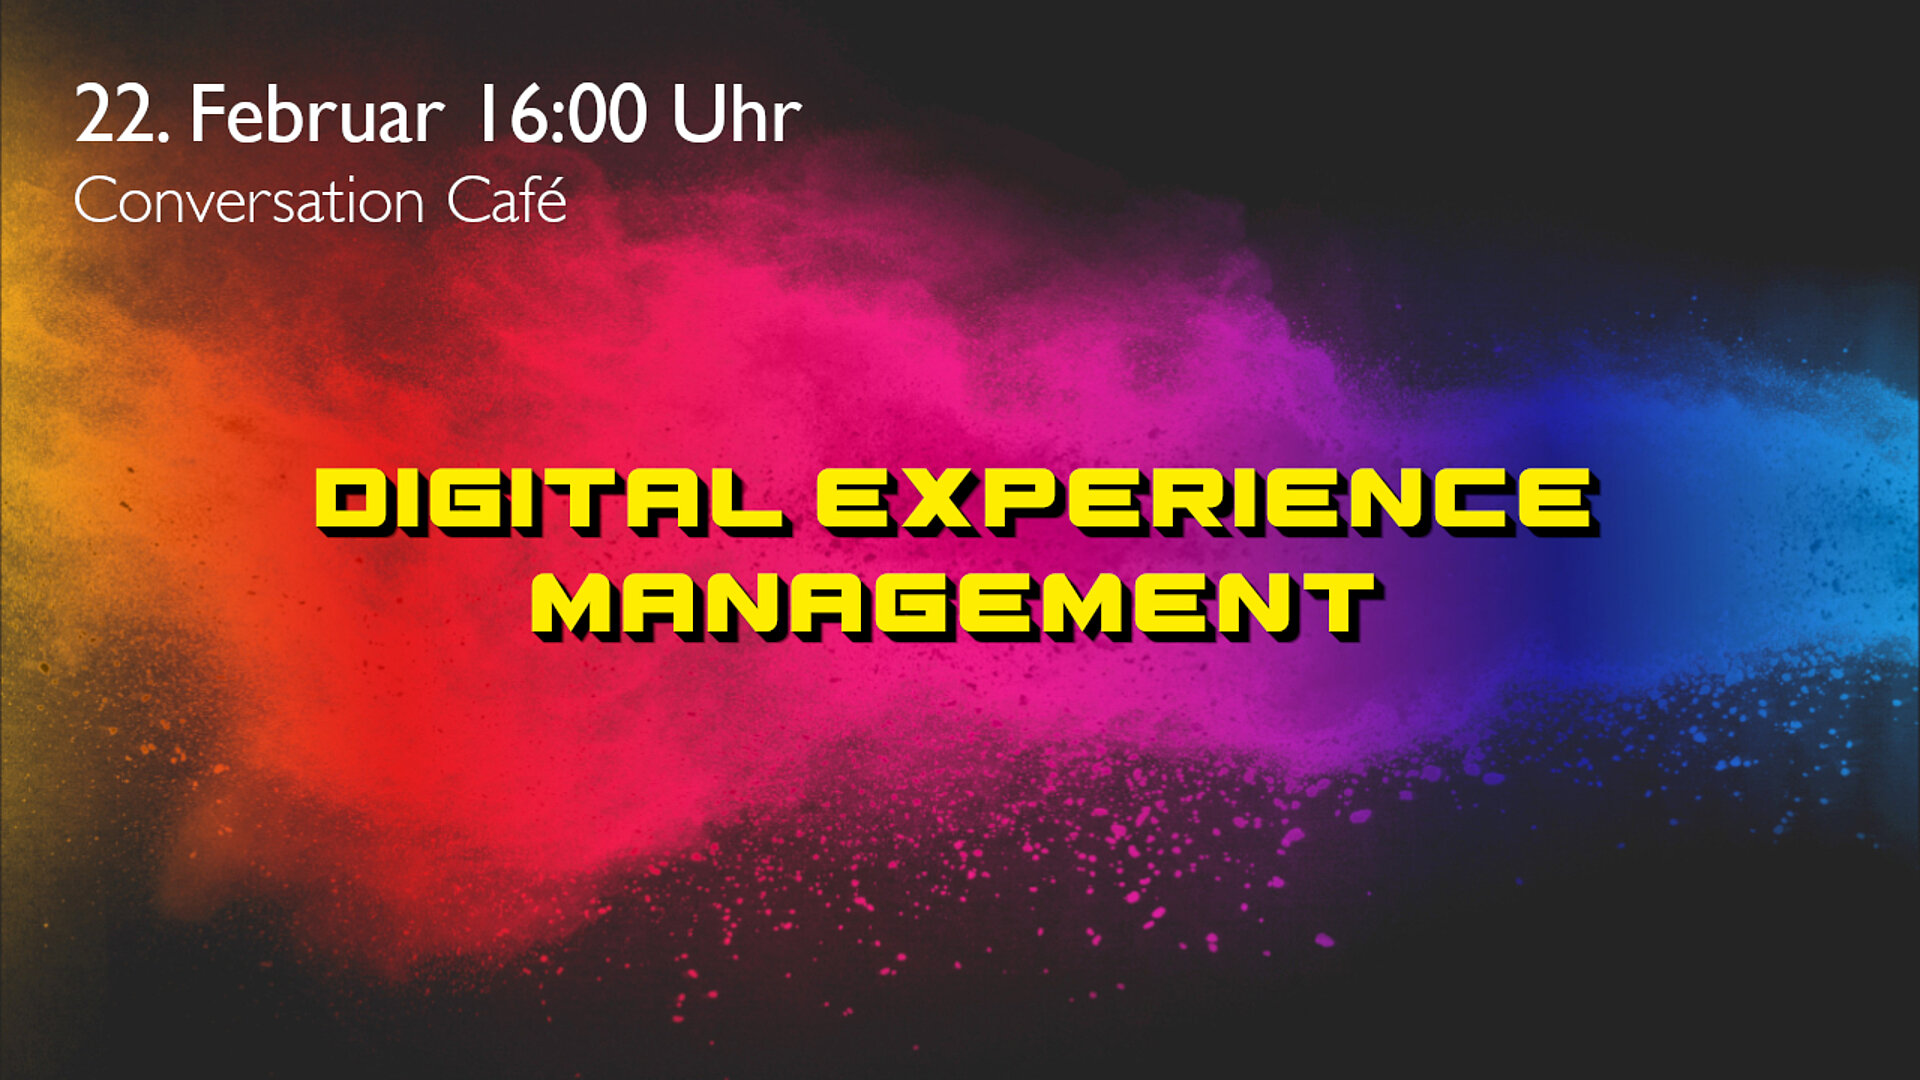 Conversation Café - Digital Experience Management